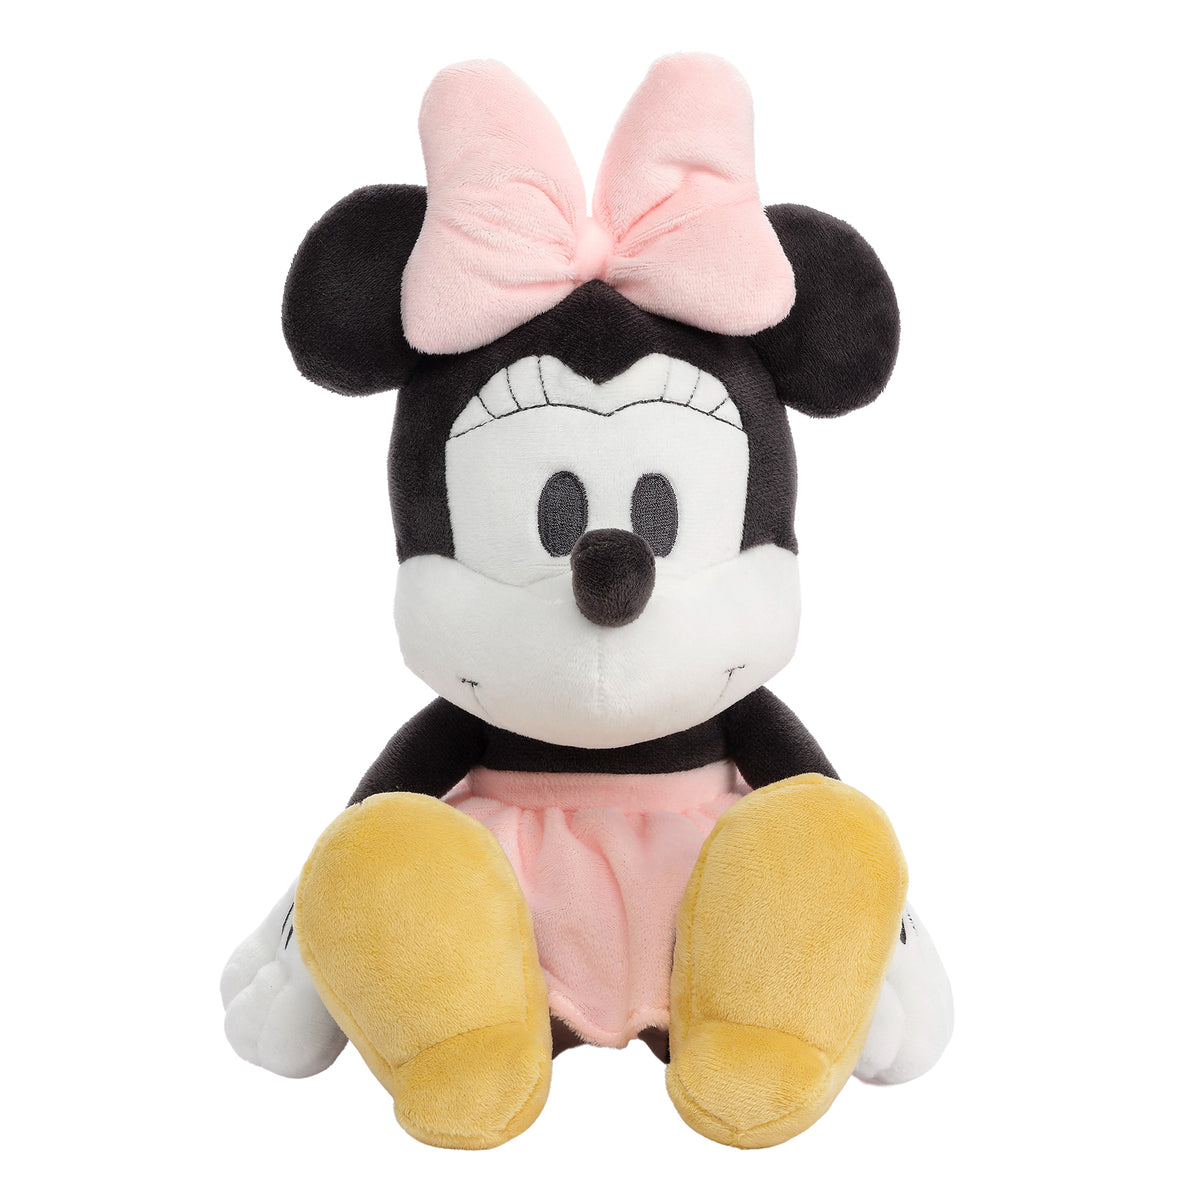 Peluche Minnie Mouse noir blanc grelot Disney Baby jouet éveil sensoriel 29  cm - Peluches/Peluches Disney - La Boutique Disney